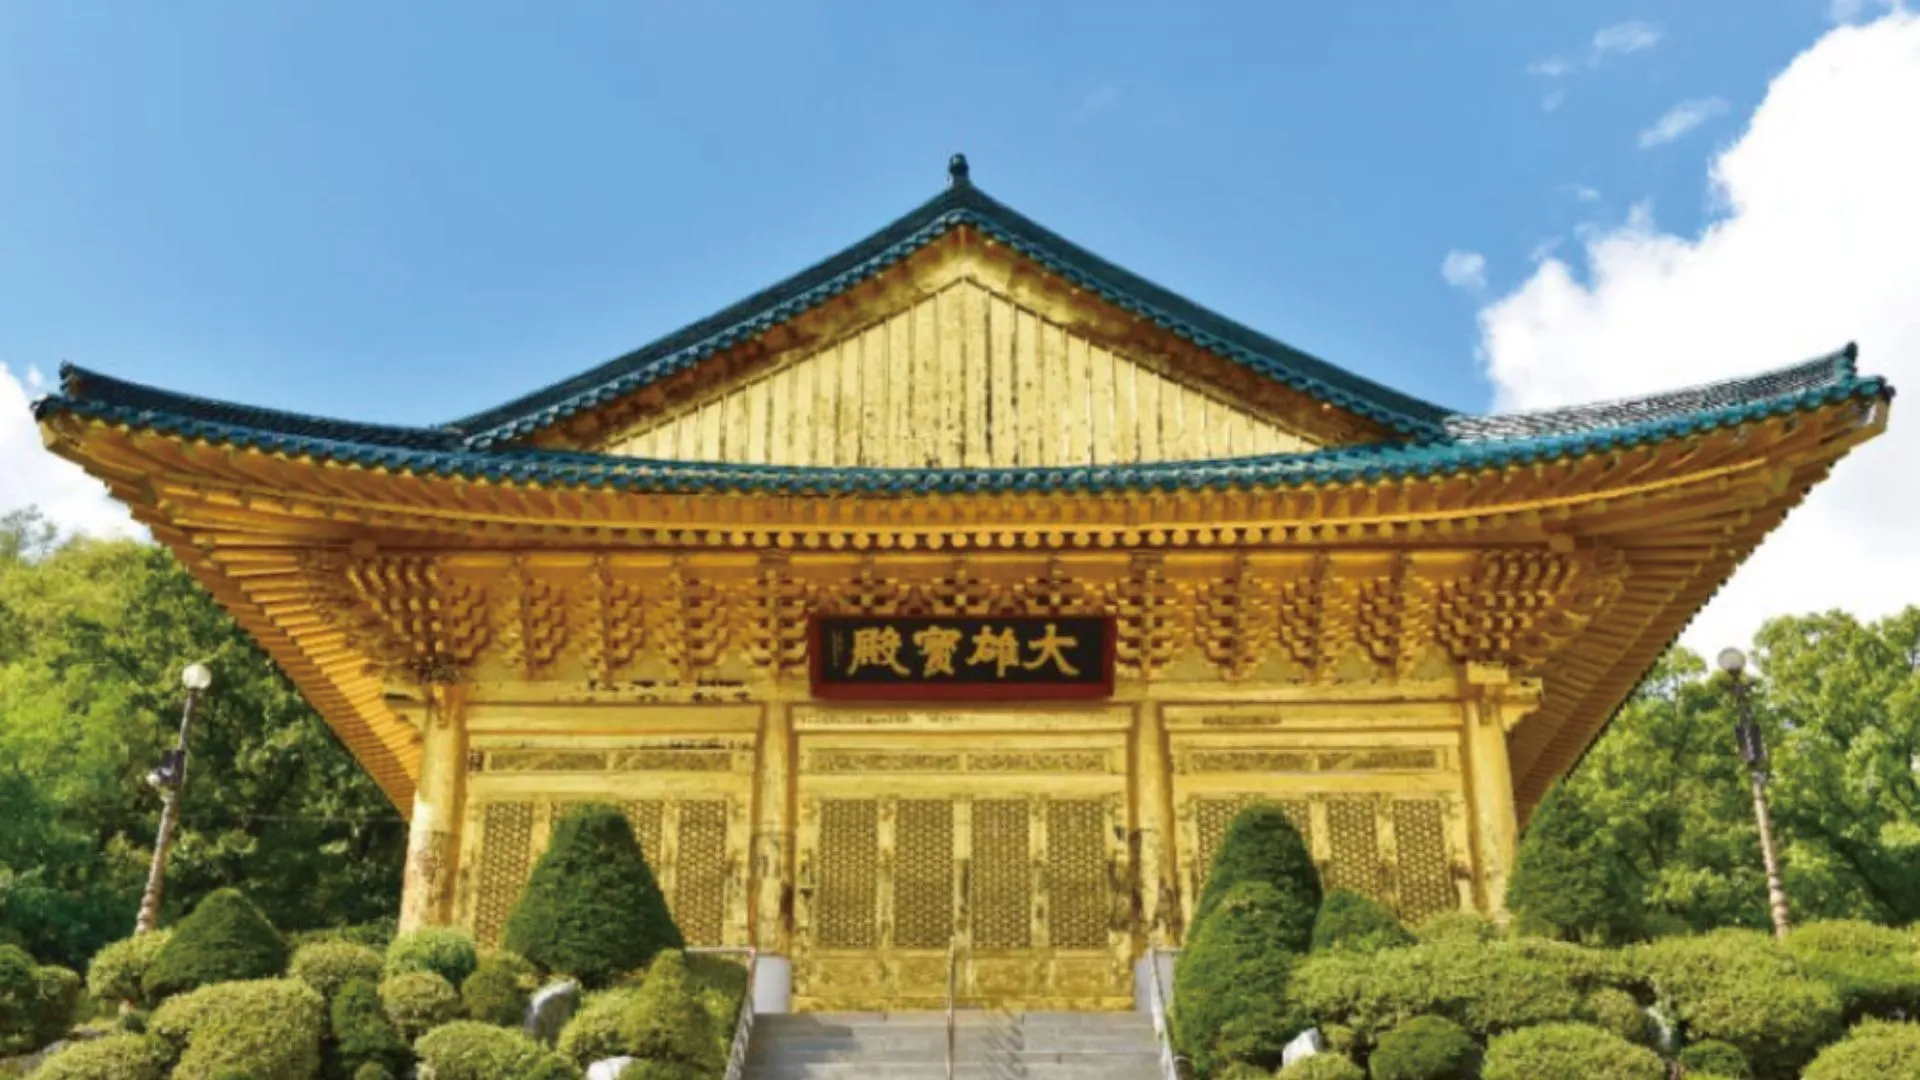 Đền Suguksa ngôi chùa ở hàn quốc Tín dụng hình ảnh: Templestaykorea Ẩn mình ở phía tây bắc Seoul, Chùa Suguksa có lịch sử từ năm 1459 khi Vua Sejo xây dựng chùa để tưởng nhớ con trai ông, Thái tử Uigyeong, người đã qua đời khi còn trẻ. Ban đầu được đặt tên là Jeonginsa, sau này nó có biệt danh là Suguksa, có nghĩa là “ngôi đền bảo vệ đất nước”.  Năm 1712, nó đảm nhận vai trò là ngôi đền bảo vệ lăng mộ hoàng gia của vua Sukjong và hoàng hậu Inhyeon. Mặc dù phải đối mặt với một trận hỏa hoạn tàn khốc, ngôi chùa đã trải qua sự hồi sinh vào năm 1900. Ngày nay, Đền Suguksa nổi bật với mặt trước được trang trí bằng giấy vàng đặc biệt, trong khi các mặt còn lại được sơn vàng.